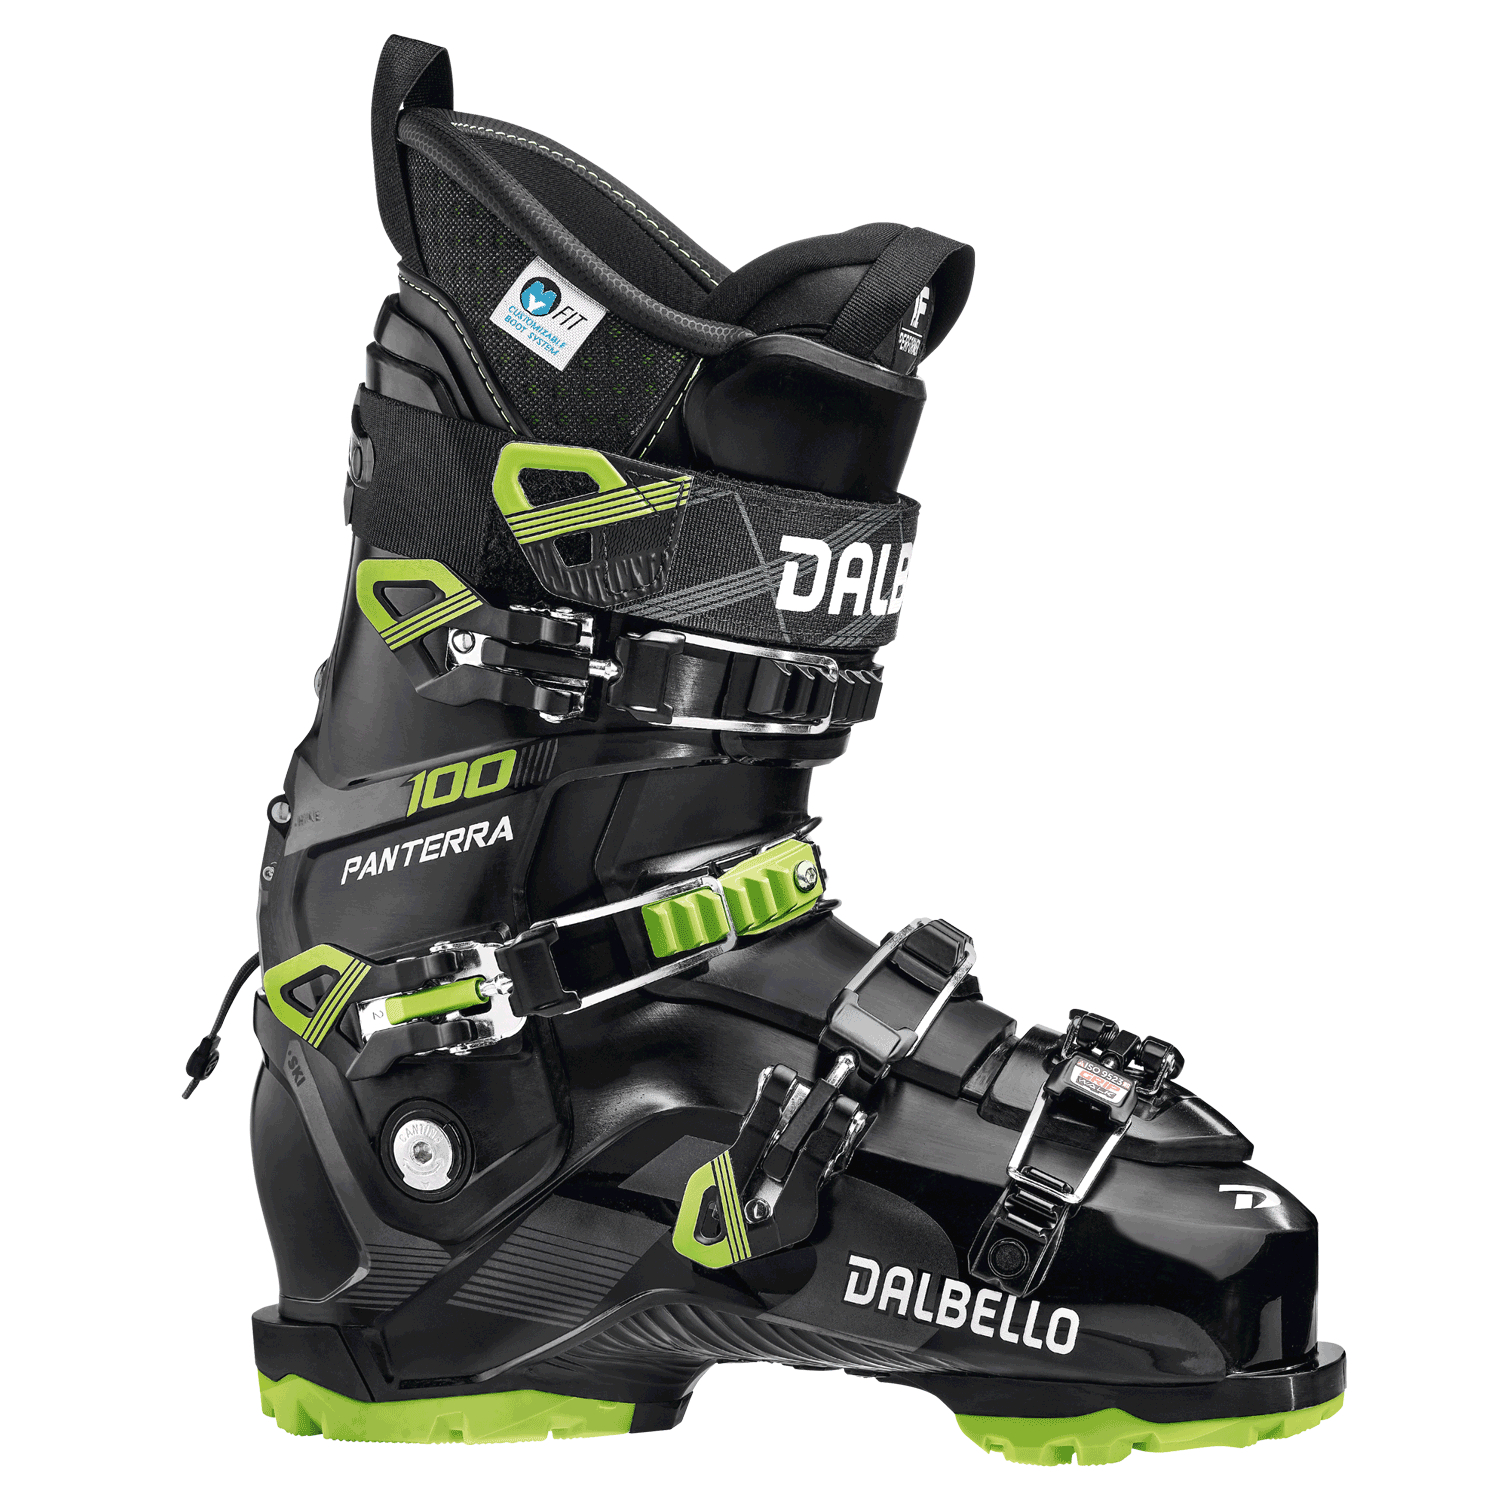 Отзывы лыжные ботинки для фрирайда Dalbello Panterra 100 GW Black/Lime (285) в Украине